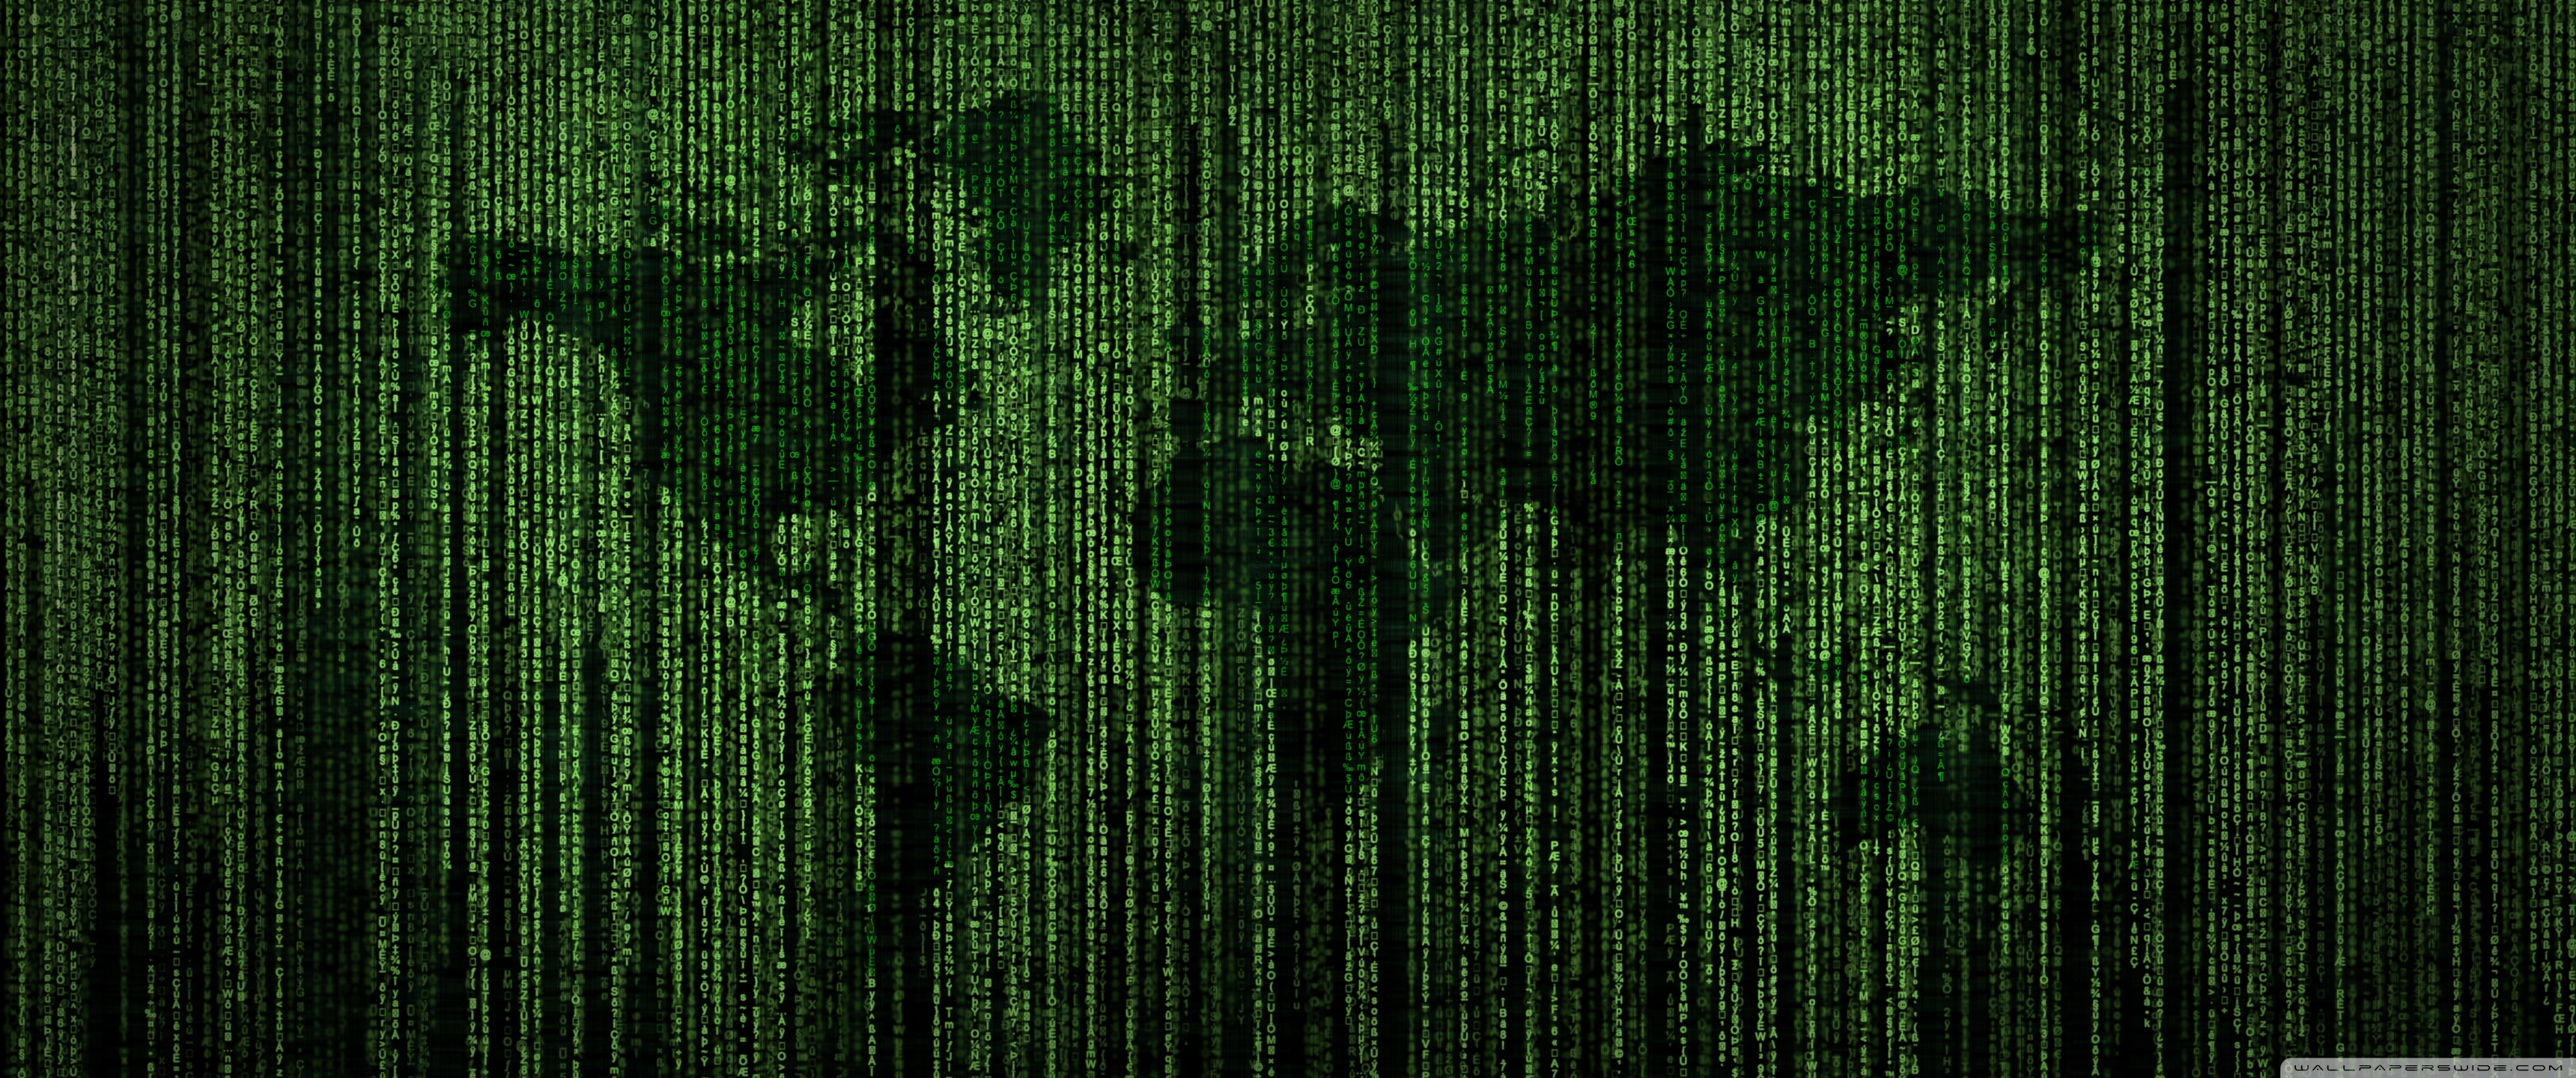 Green Matrix Code World Map Ultra HD Desktop Background Wallpaper 3440x1440